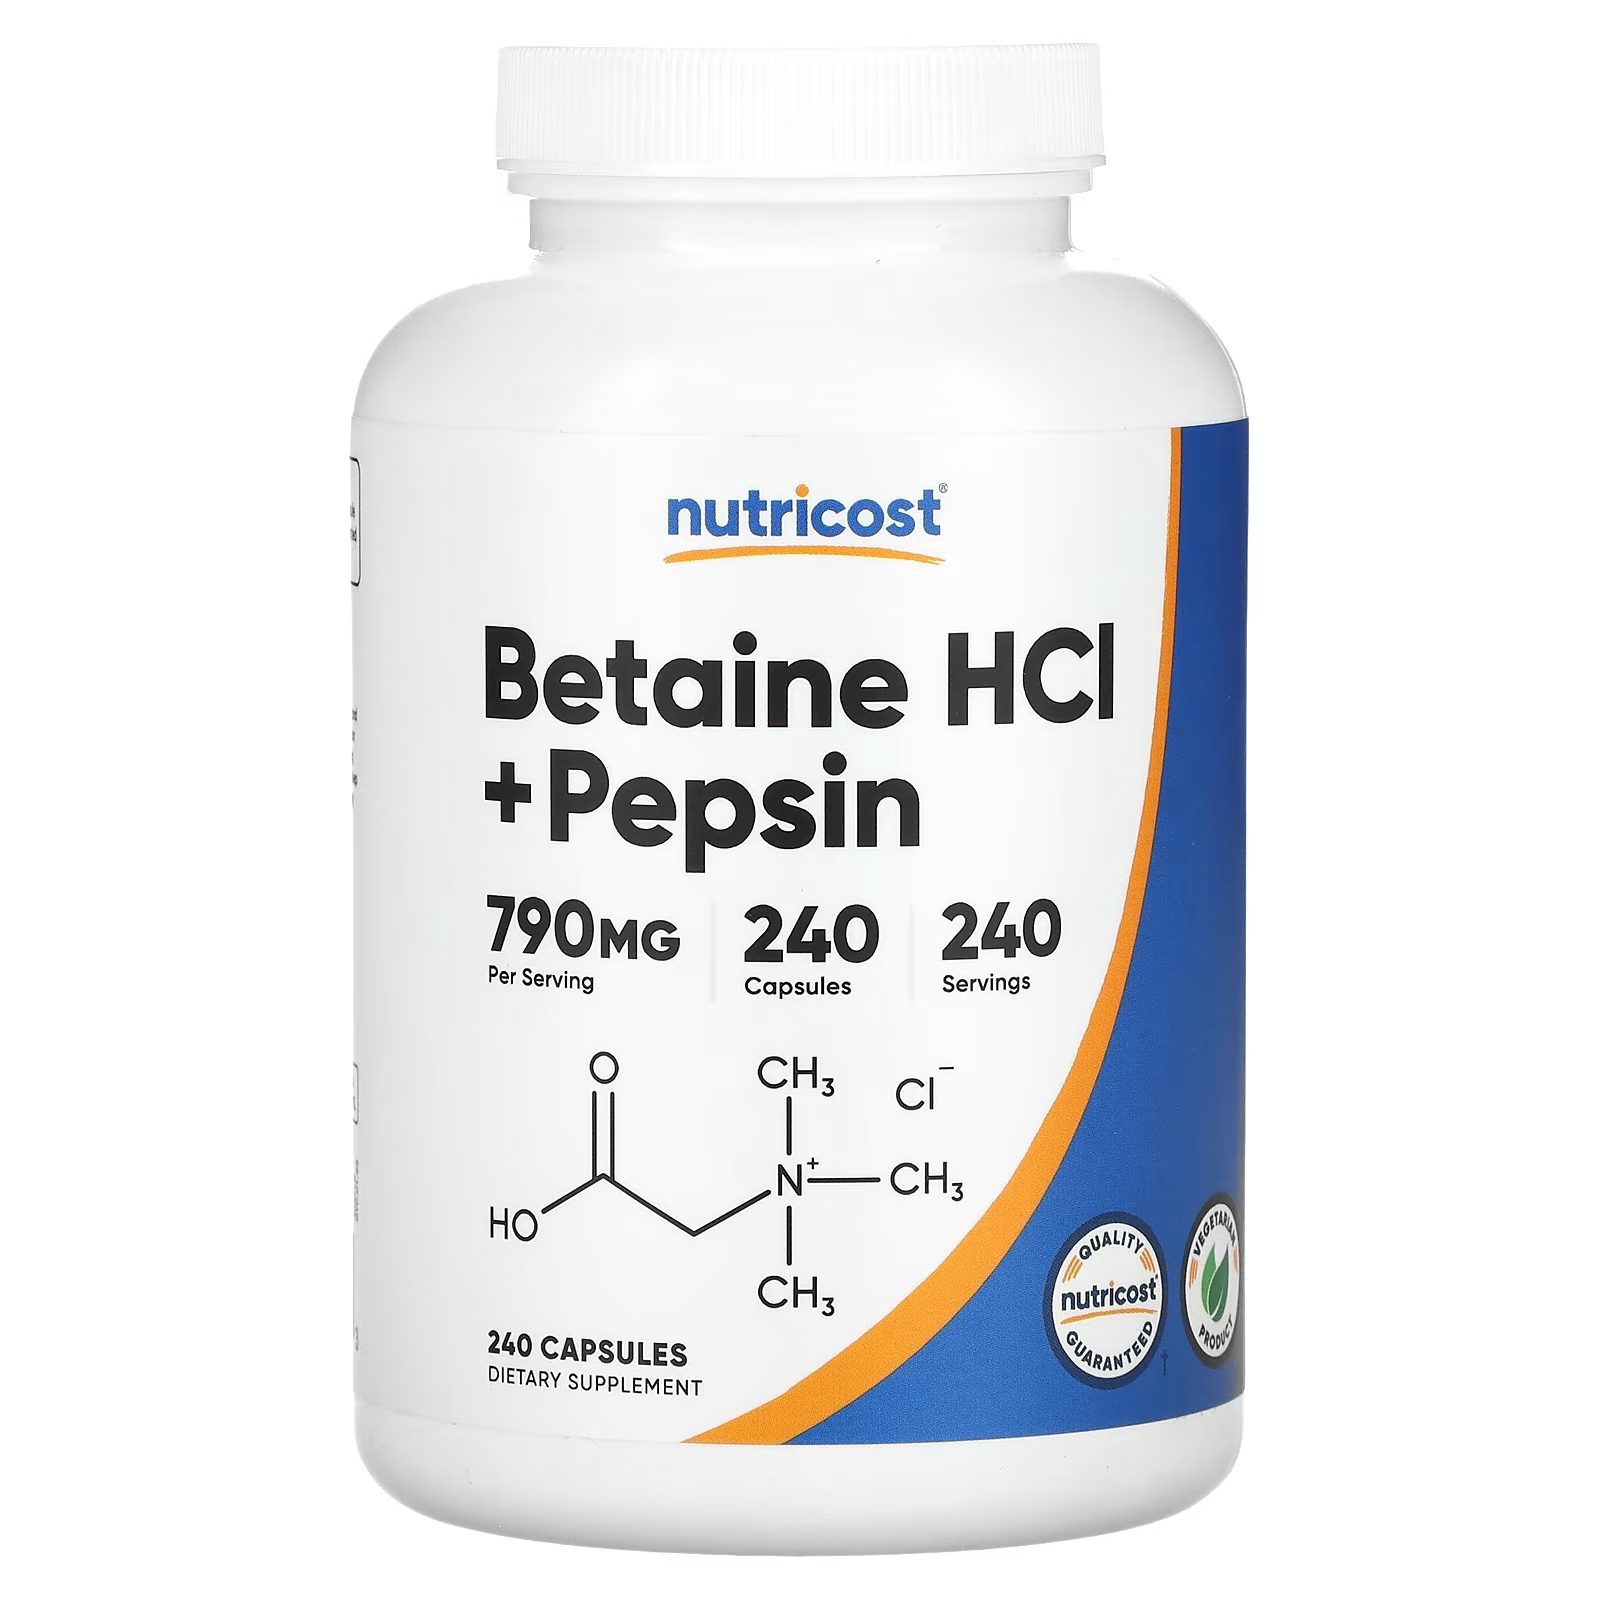 Пищевая добавка Nutricost Бетаин гидрохлорид + пепсин 790 мг, 240 капсул пищевая добавка nutricost биотин 240 капсул